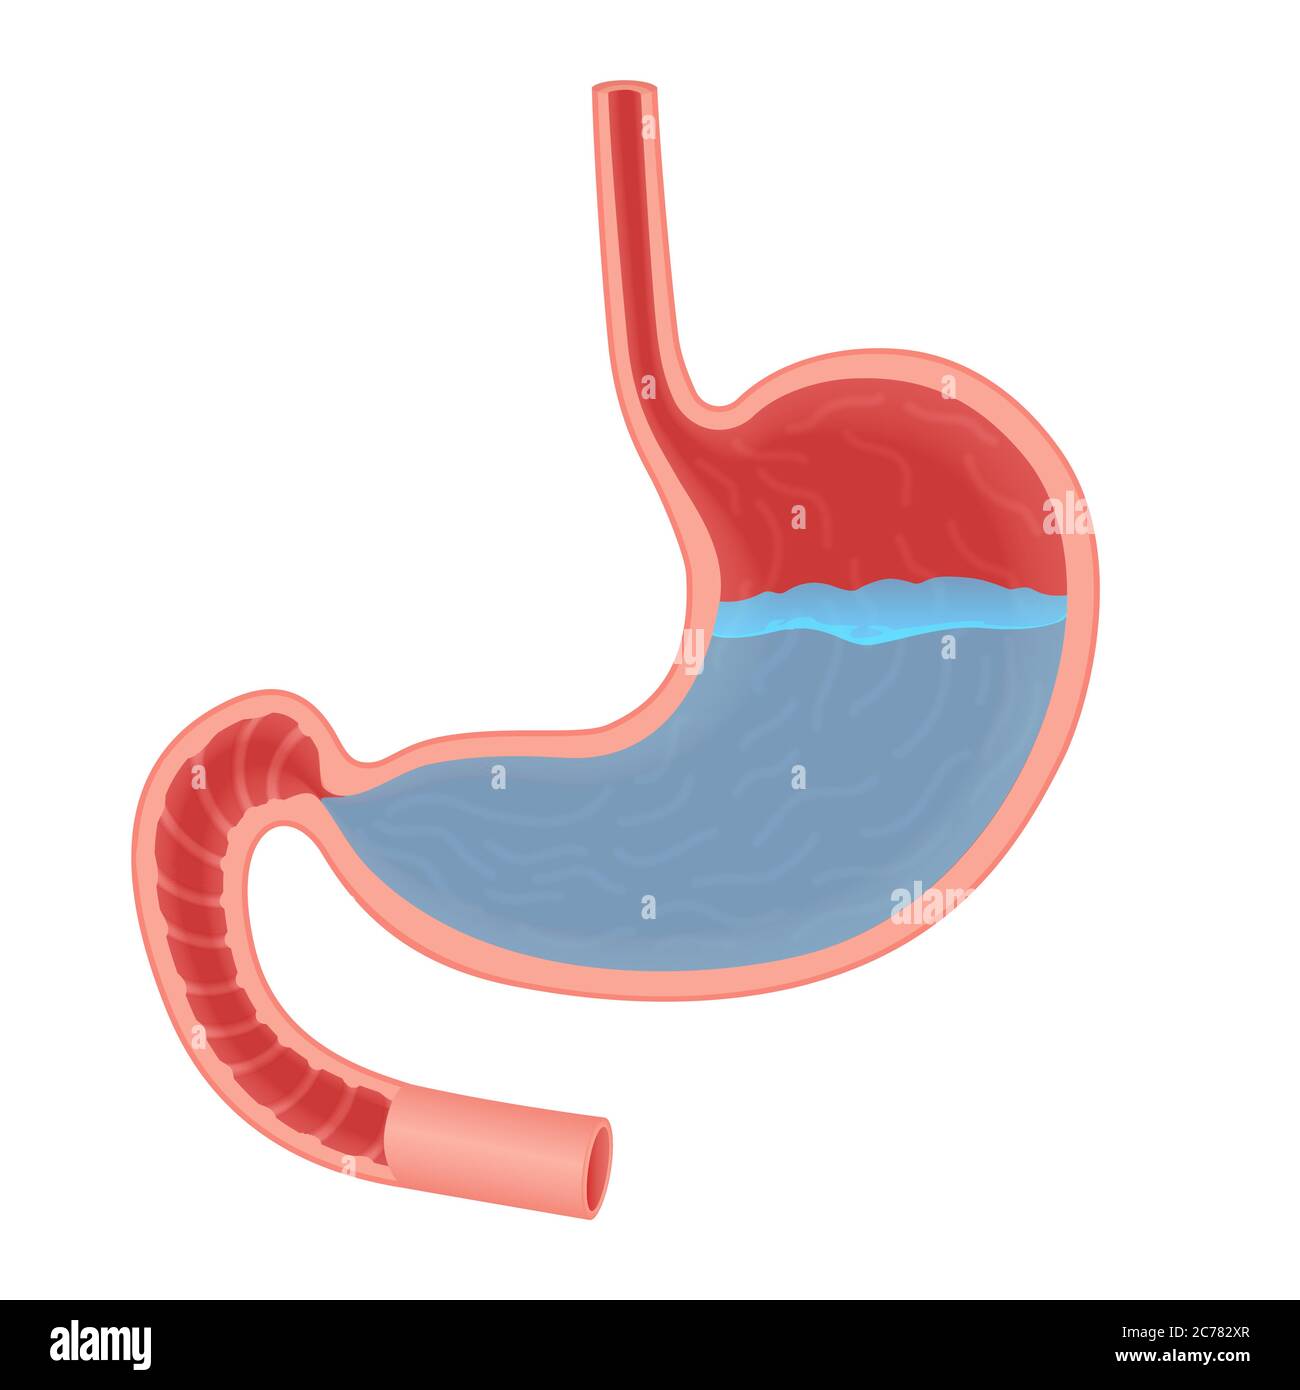 Vektor Medizinische Illustration über Säure im Magen. Magensäure Reflux, Magensäure Stock Vektor